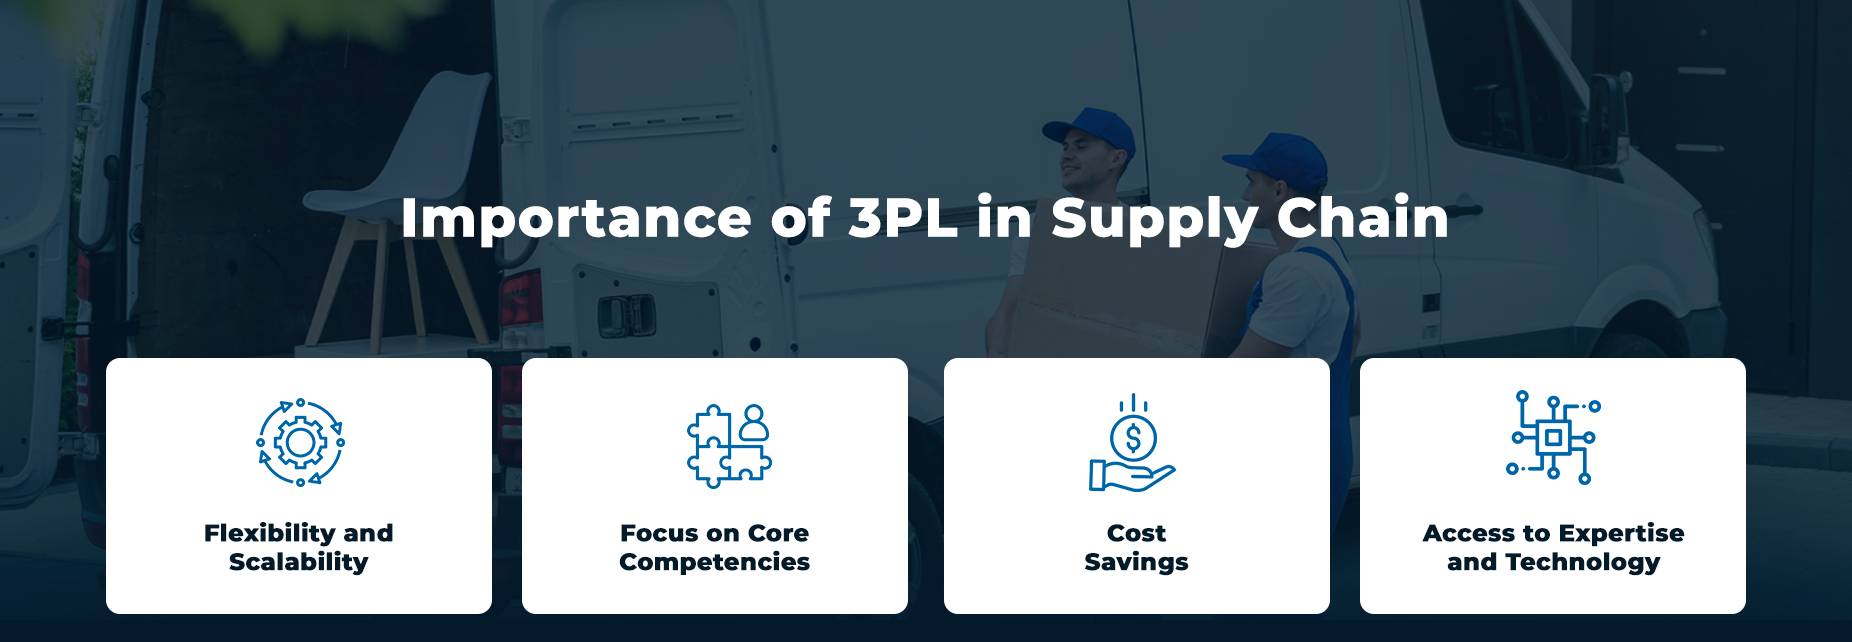 Tầm quan trọng của 3PL trong chuỗi cung ứng